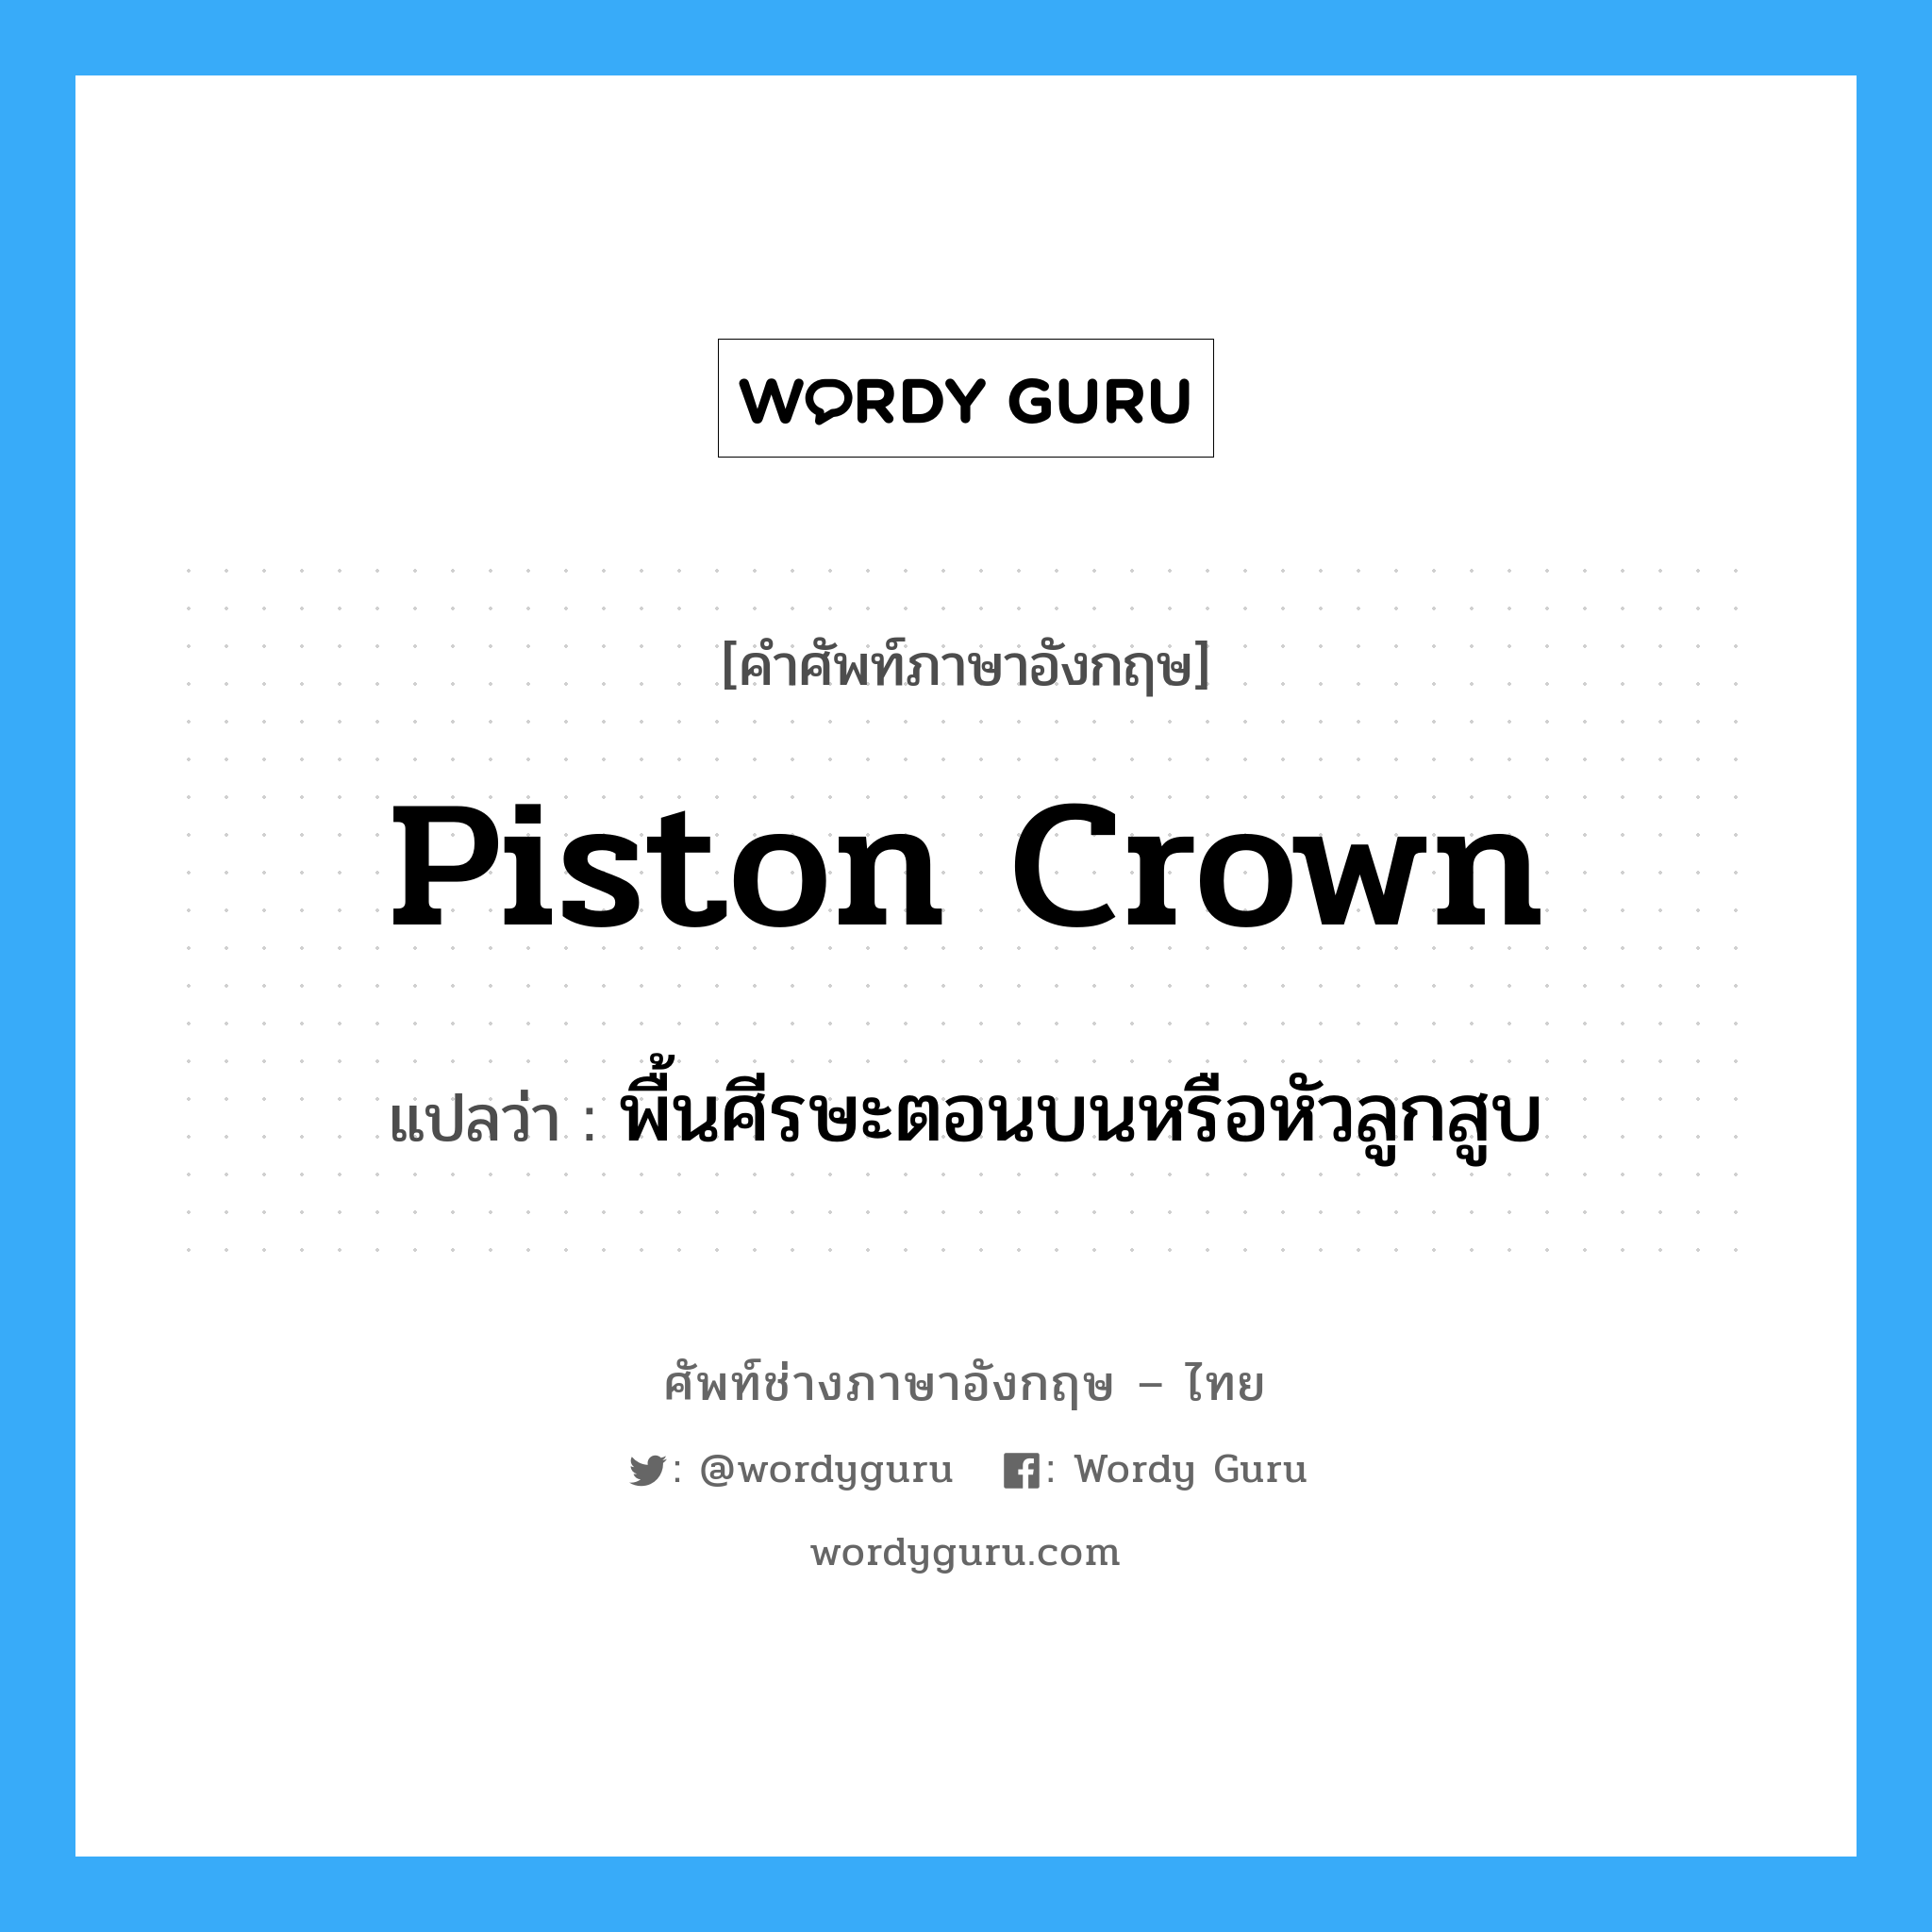 piston crown แปลว่า?, คำศัพท์ช่างภาษาอังกฤษ - ไทย piston crown คำศัพท์ภาษาอังกฤษ piston crown แปลว่า พื้นศีรษะตอนบนหรือหัวลูกสูบ